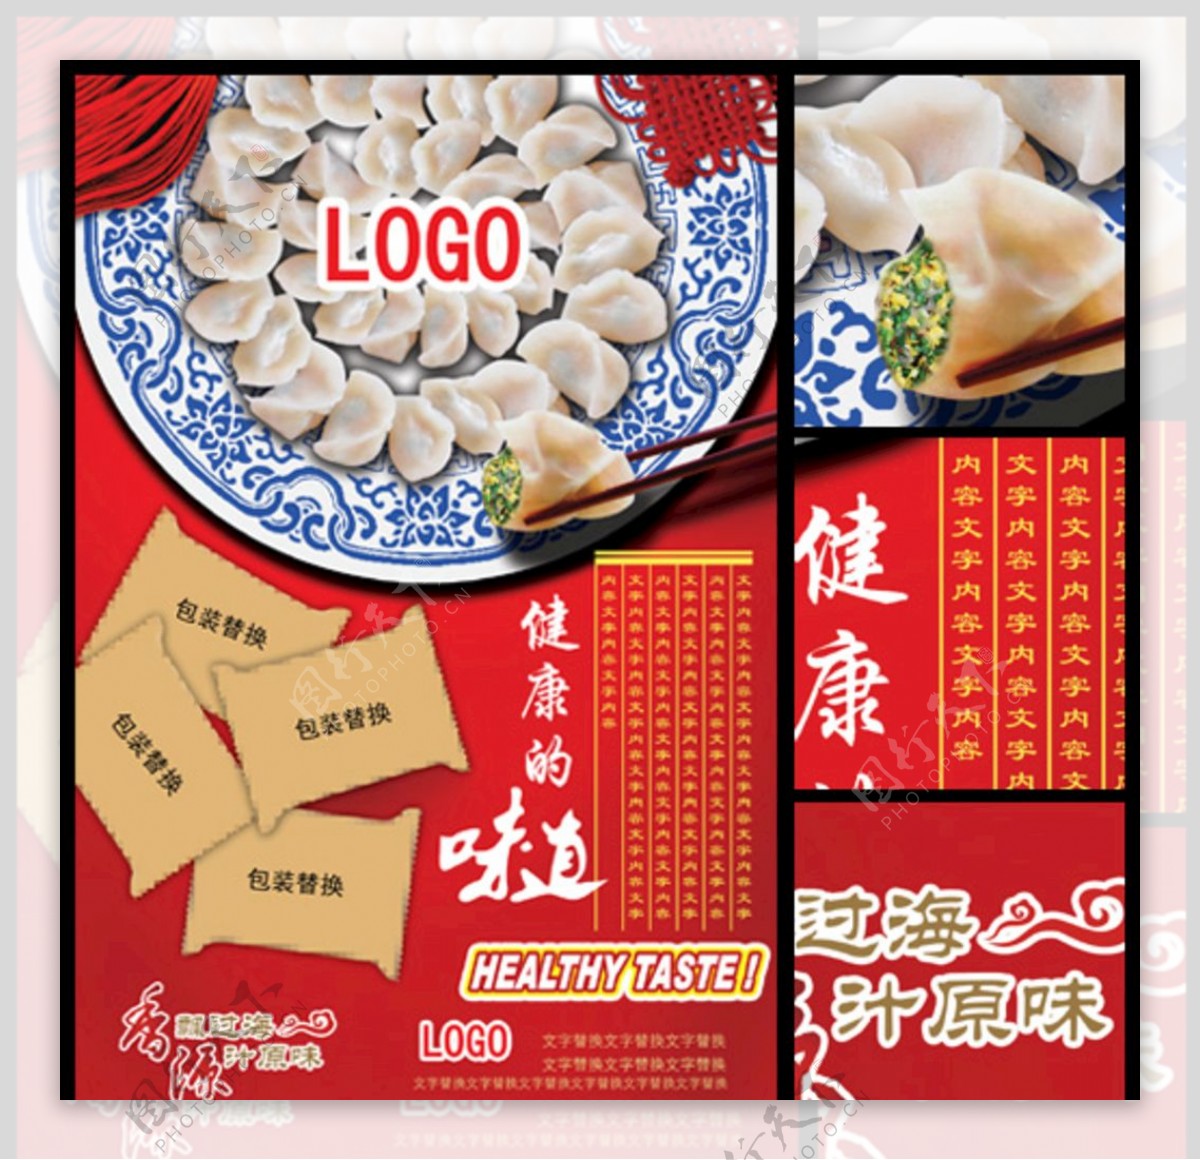 饺子品牌促销海报设计